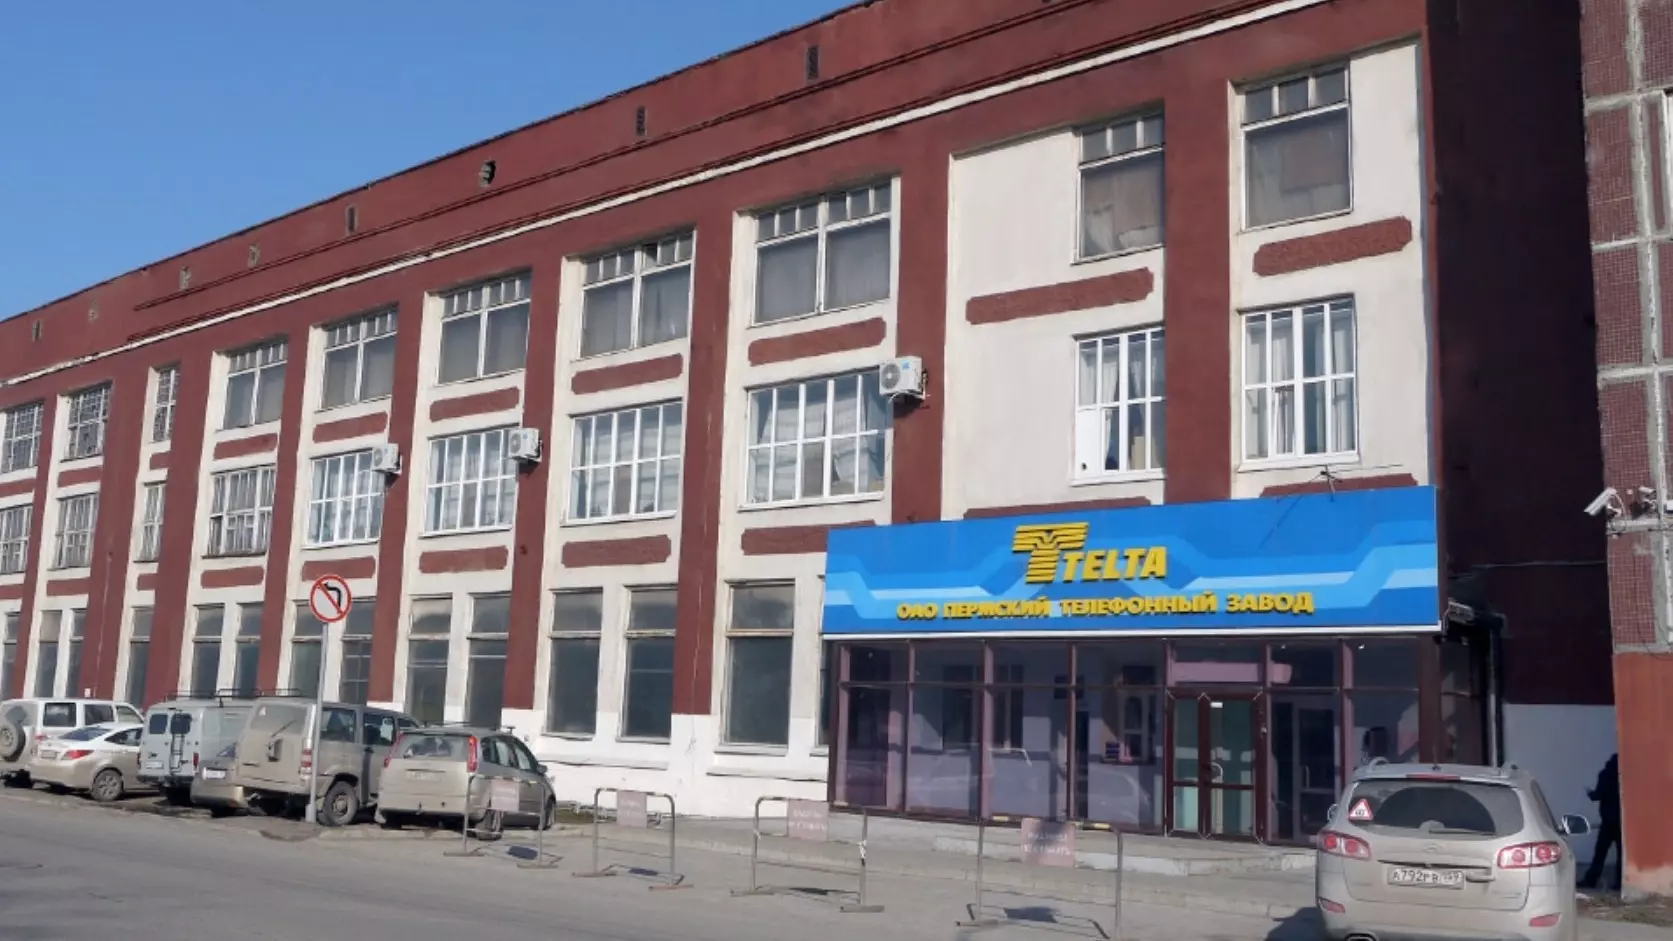 Из уголовного дела Пермского телефонного завода исчезли важные доказательства